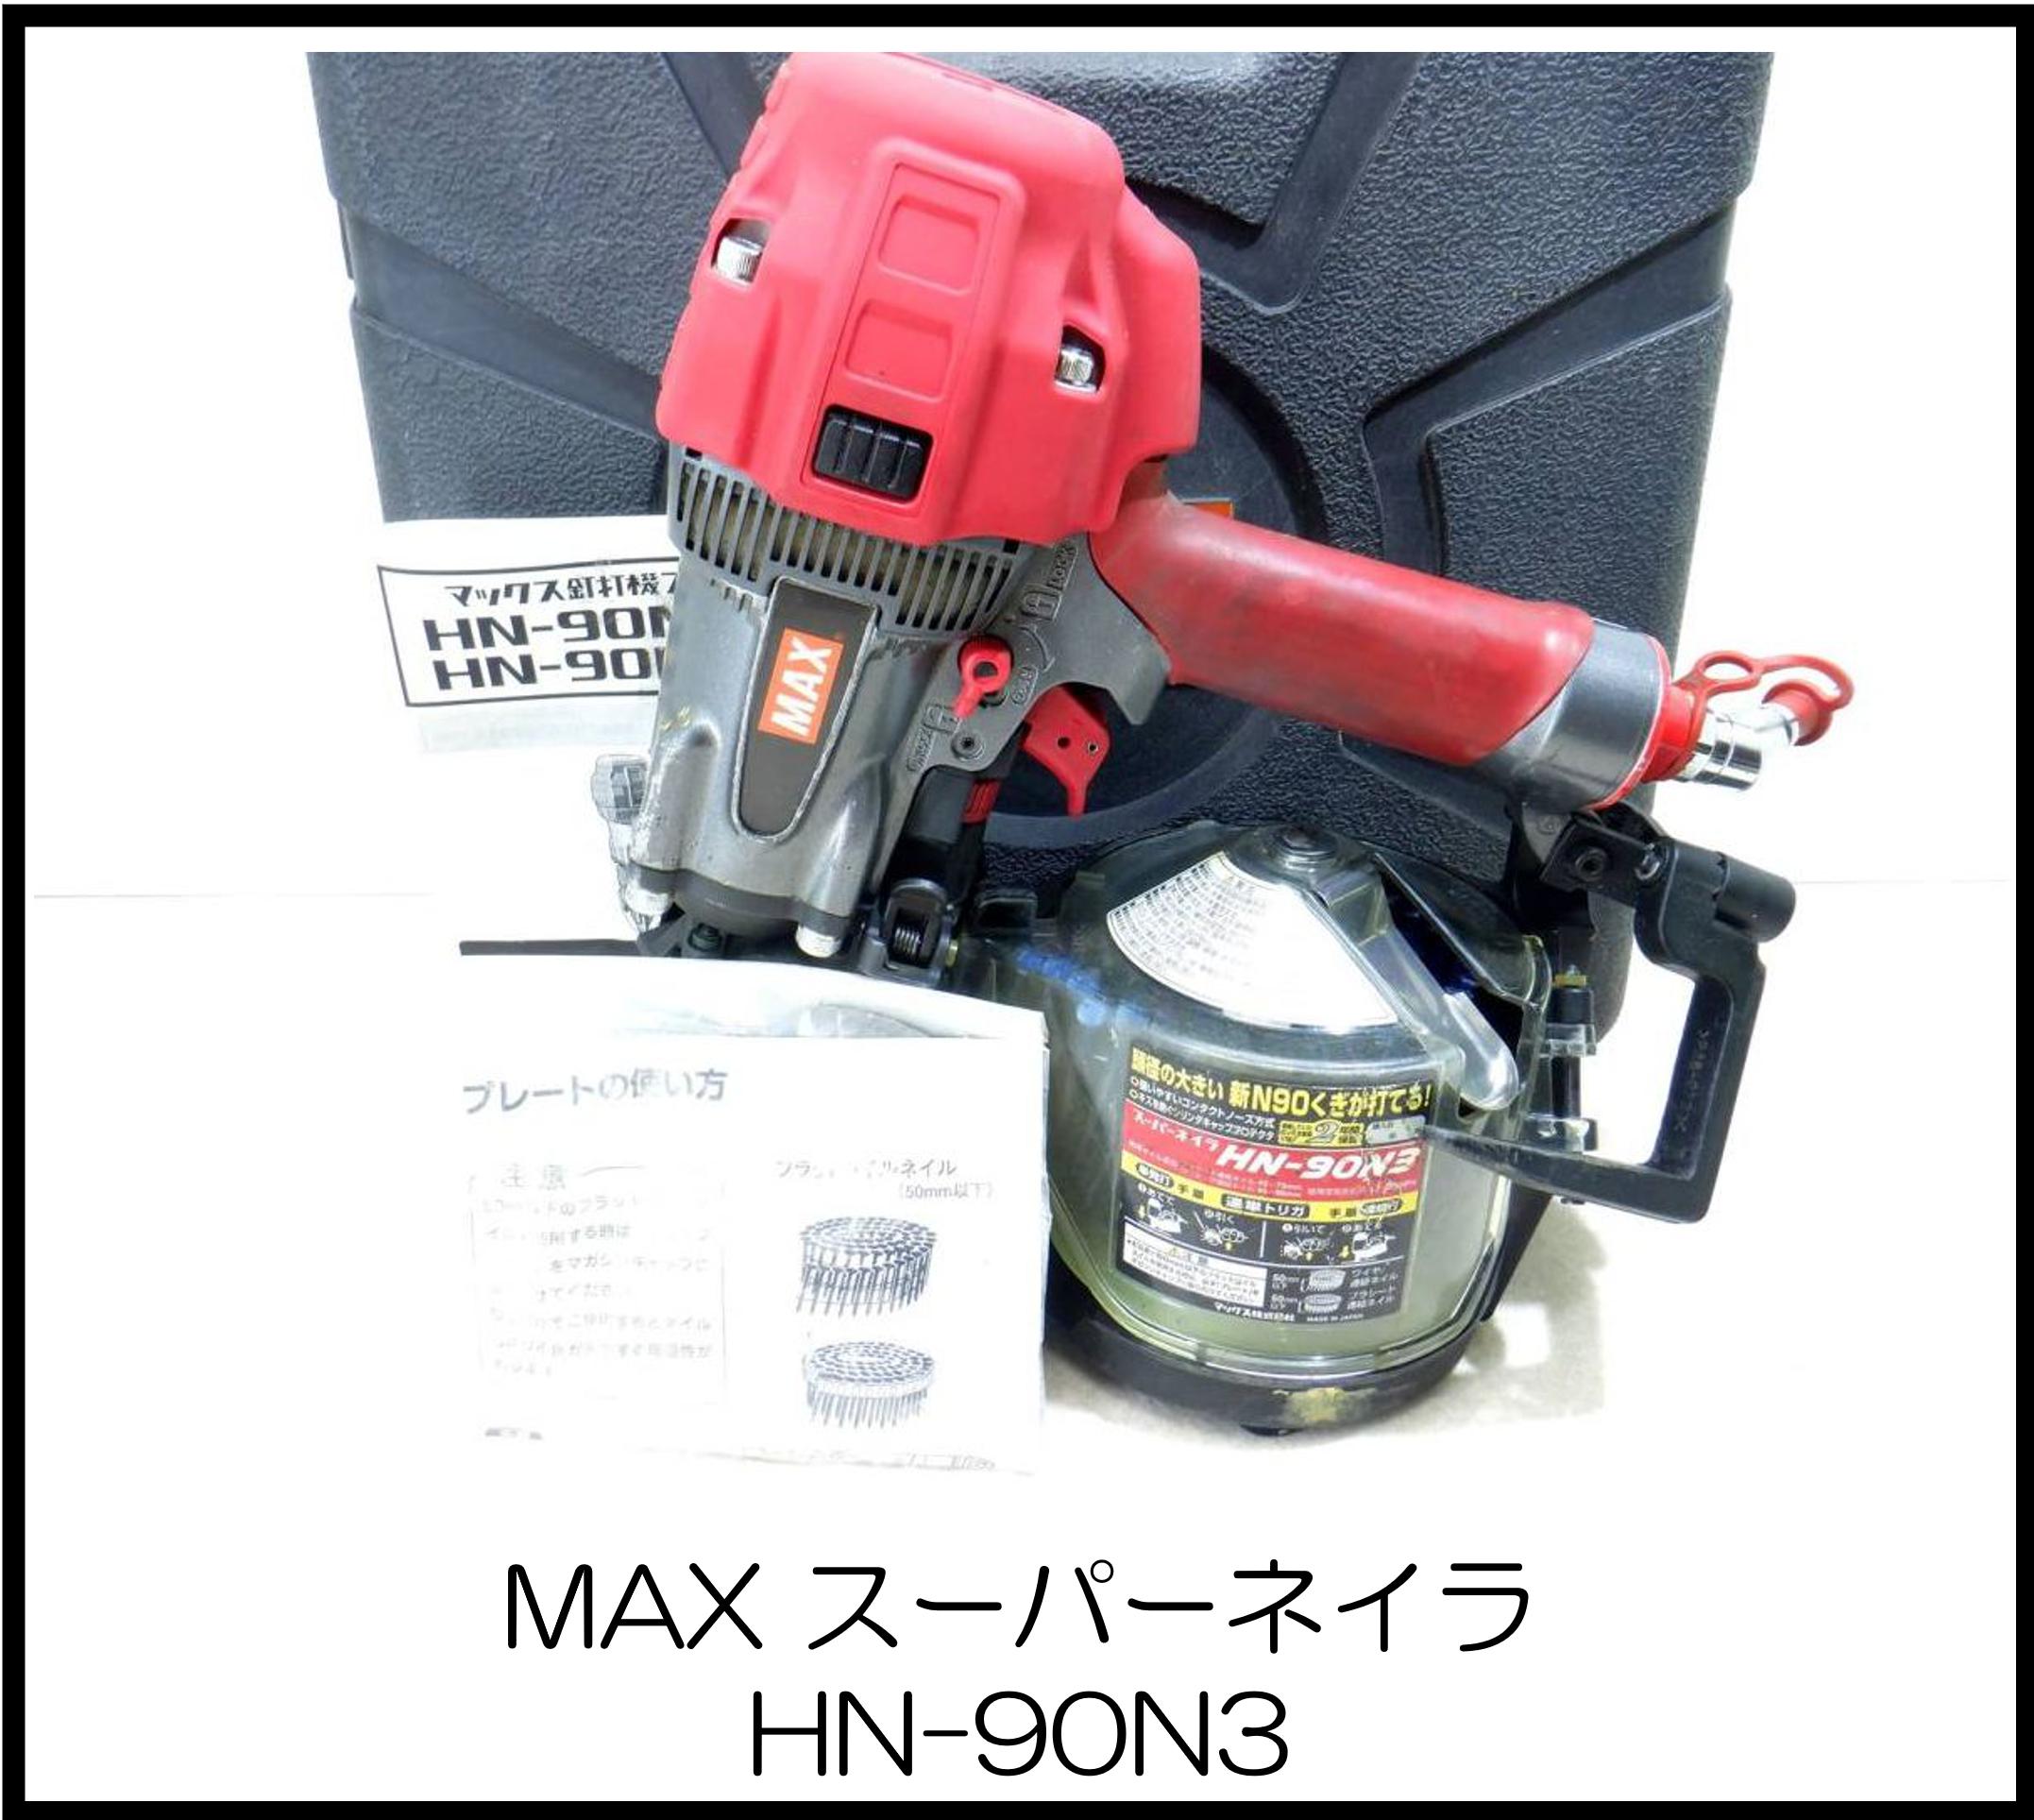 マックス スーパーネイラ HN-90N3 大阪工具買取エスクライン